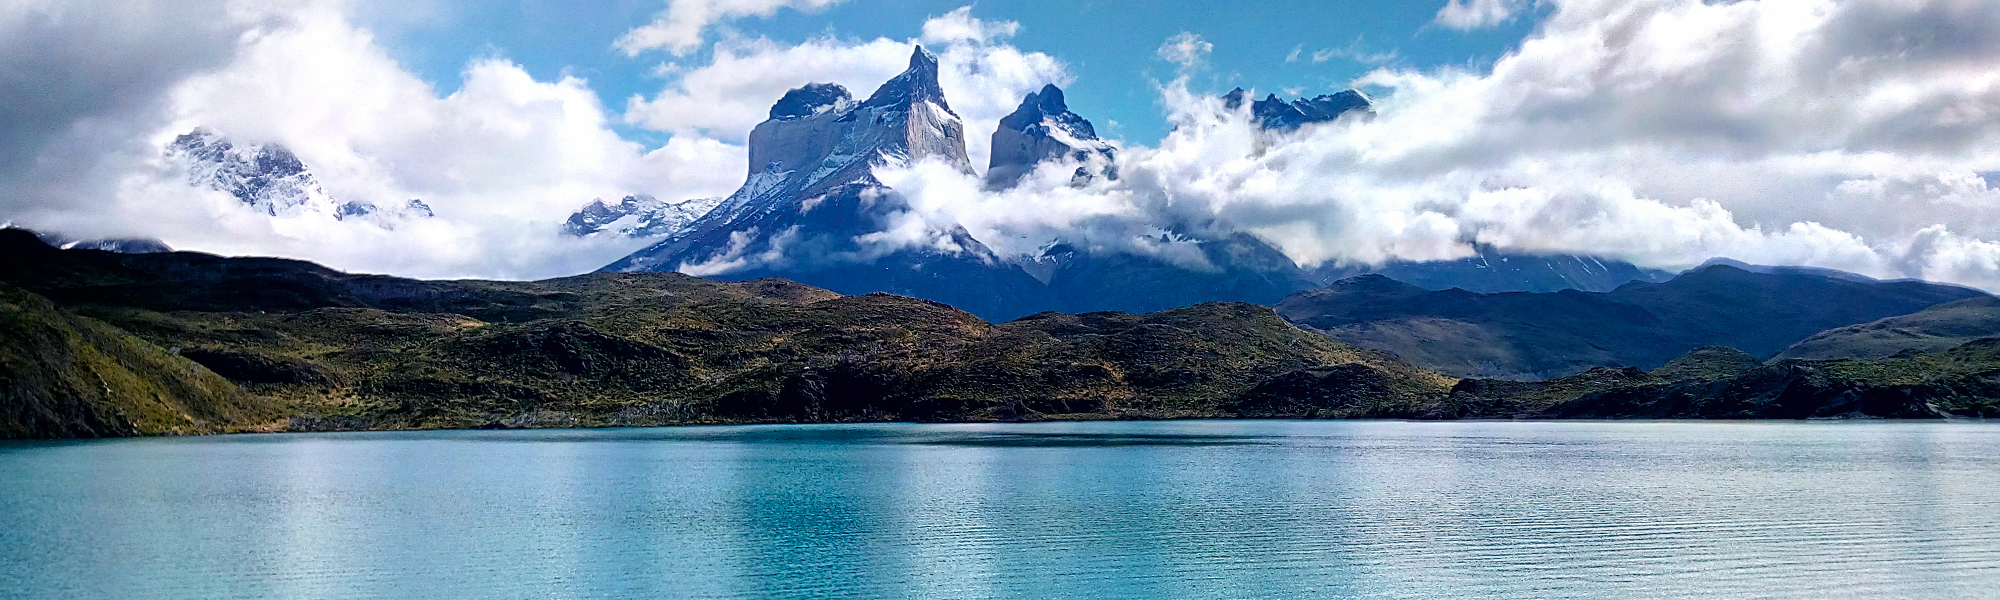 Croisière Patagonie © Paul Le Coz